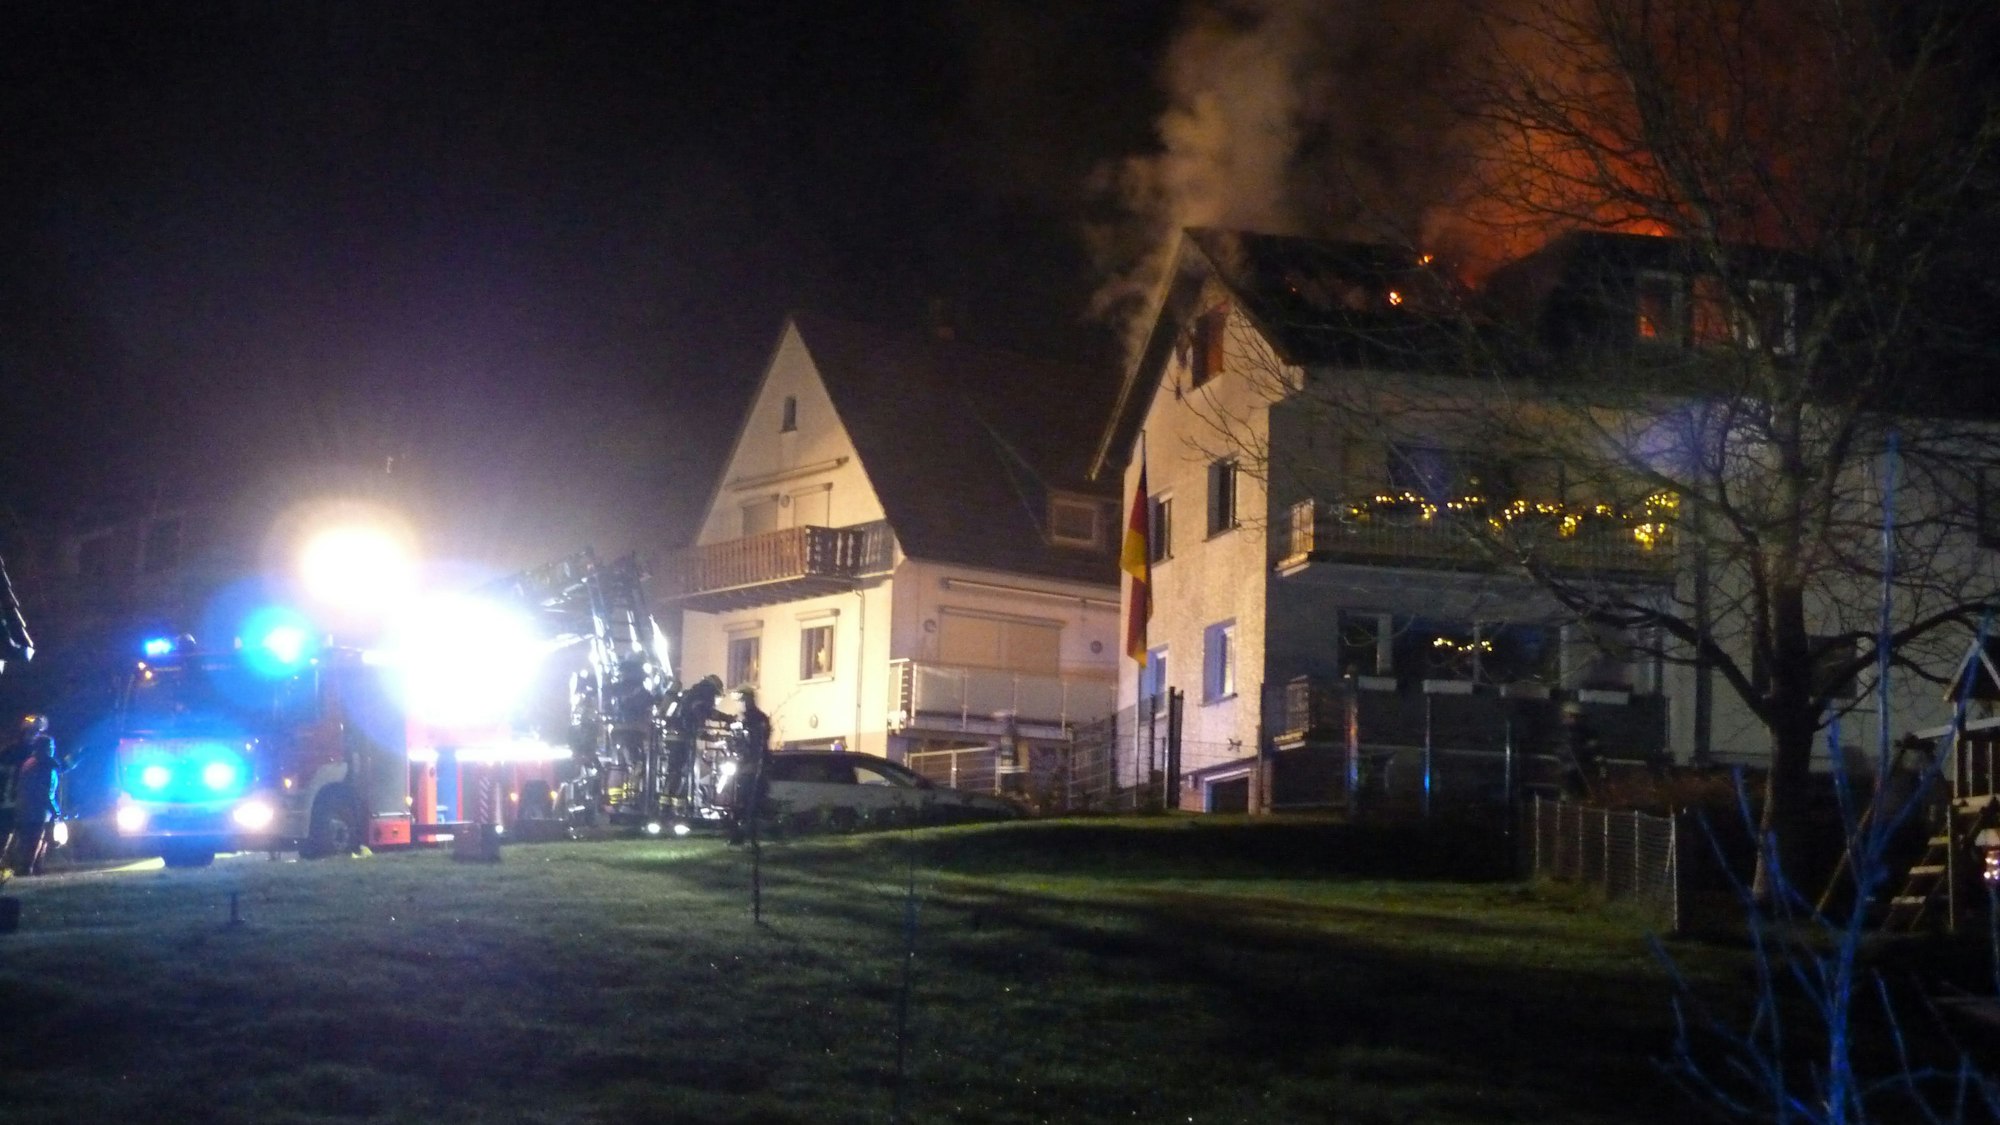 Feuerwehrwagen und Einsatzkräfte stehen auf der Straße vor dem brennenden Haus. Die Flammen sind durch das Dachfenster zu sehen.